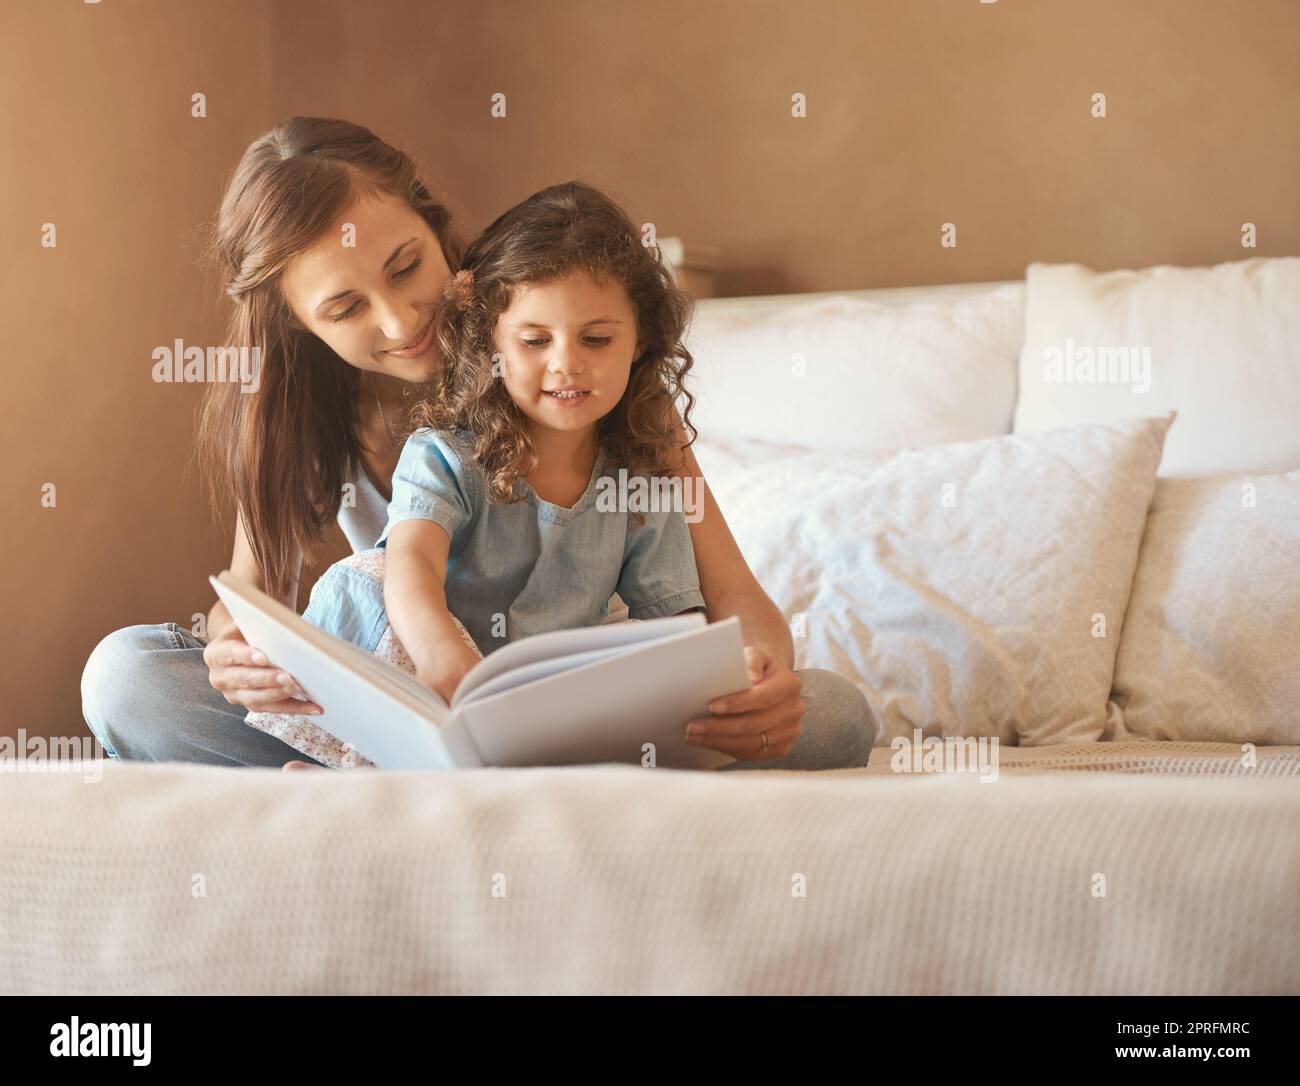 La famiglia trascorse bene il tempo, una madre e una figlia felici a casa che leggavano una favola sul letto. Foto Stock